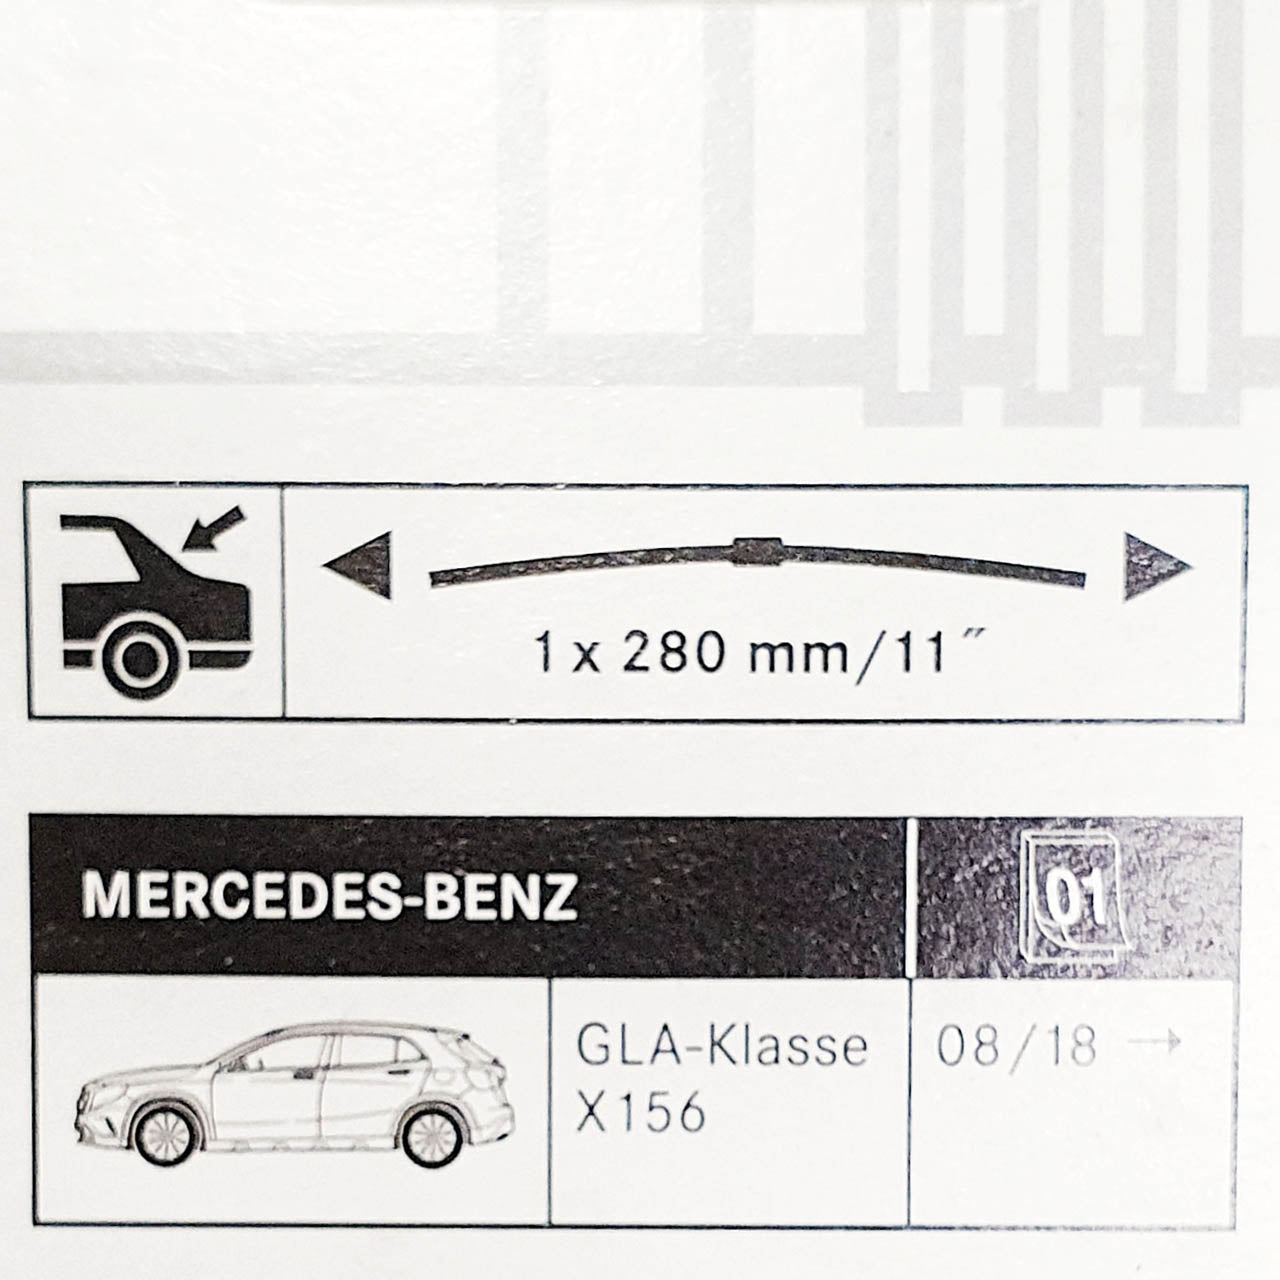 Genuine Mercedes-Benz Rear Wiper Blade E Class 213, GLA X156 models